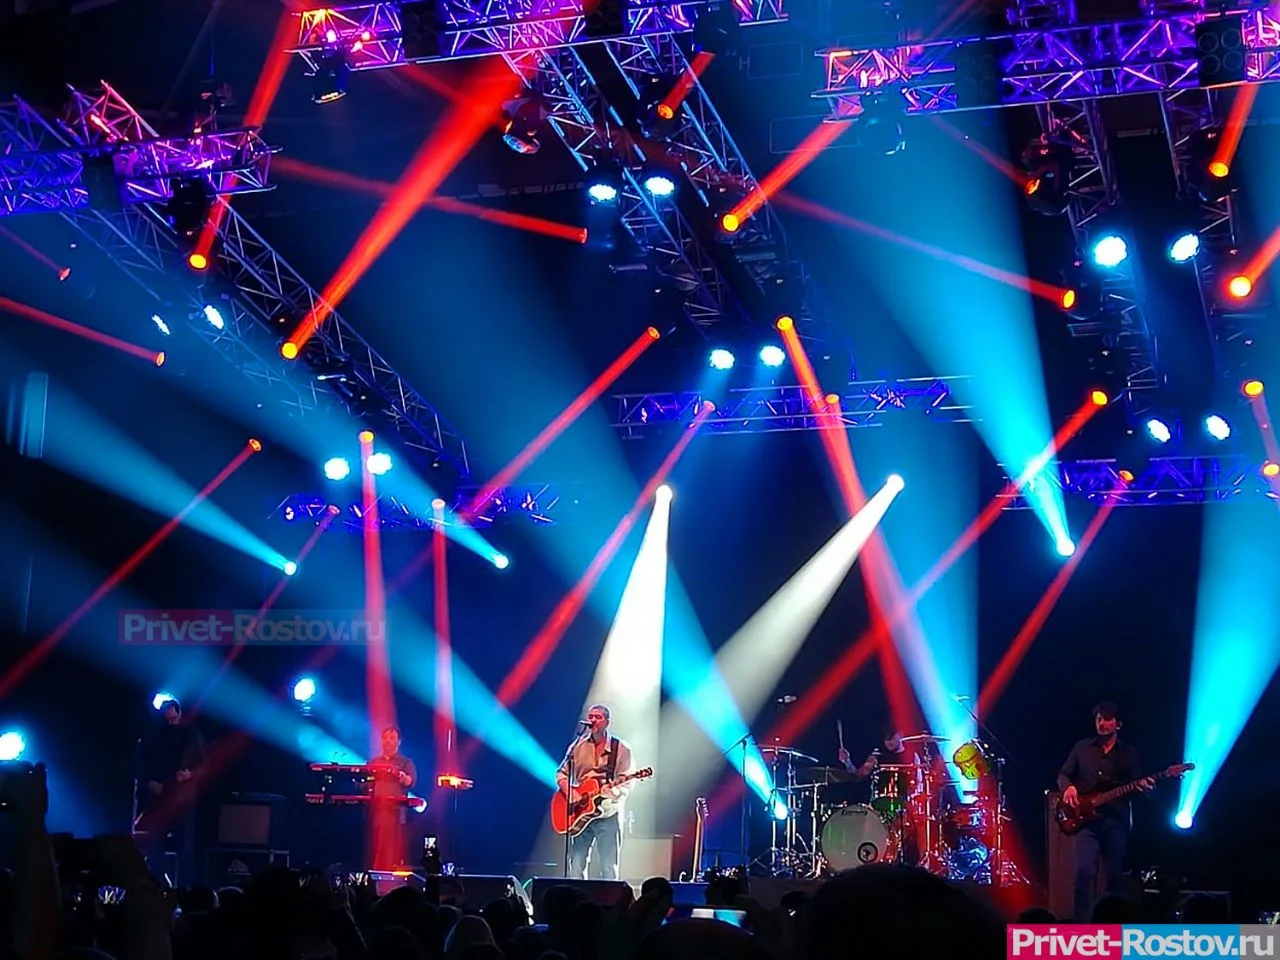 Ростовчане просят перенести концерты с крыши ТРЦ «Парк» в июле